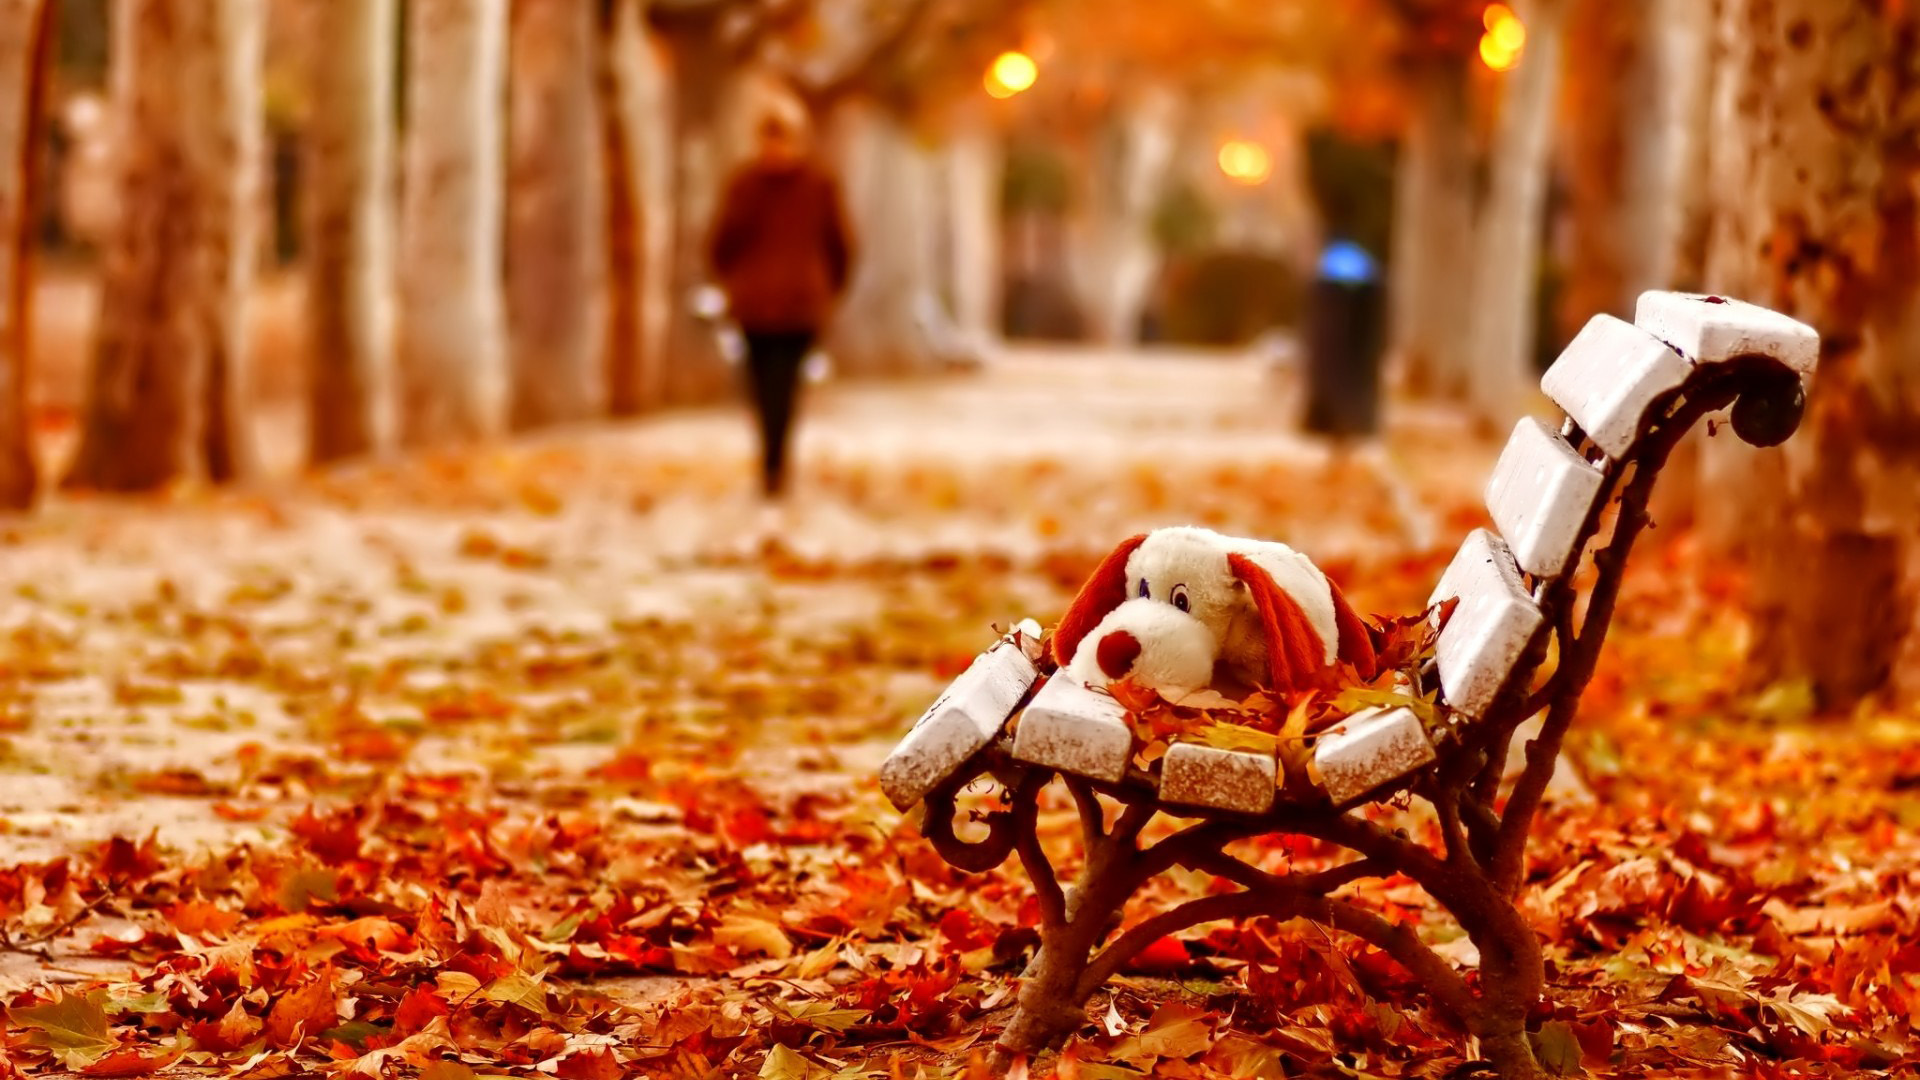 秋天,叶子,板凳,玩具,女孩,背影,意境桌面壁纸